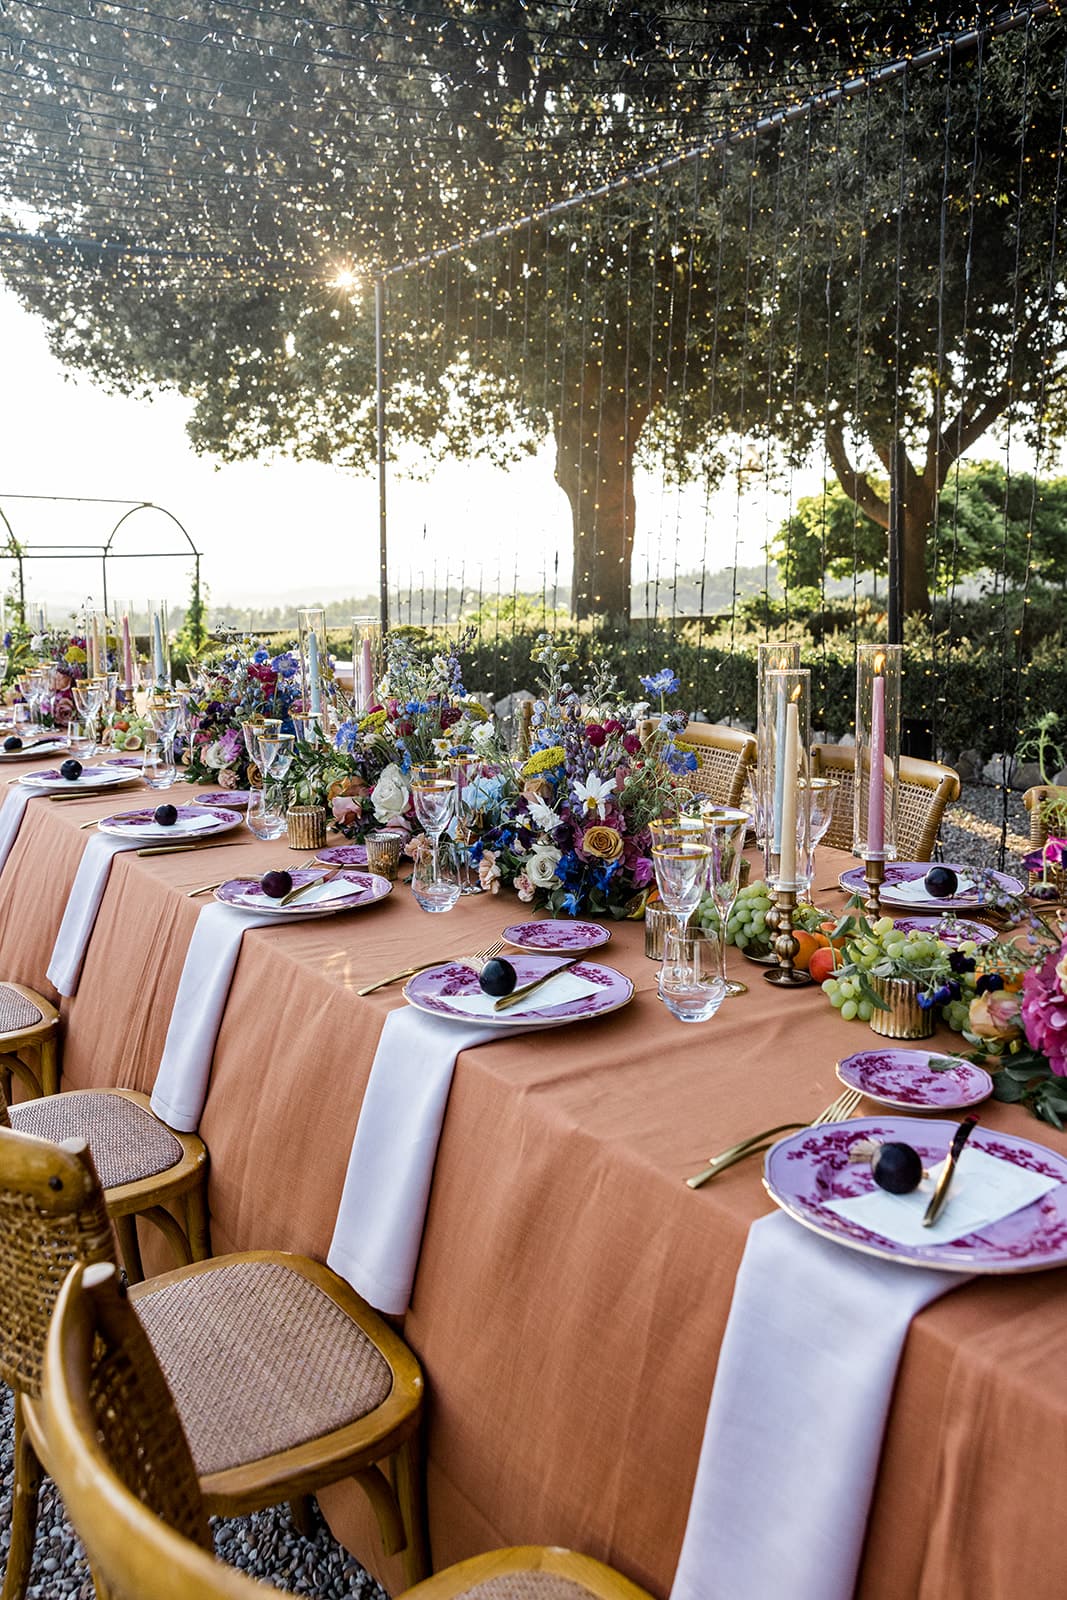 Wedding anniversary reception decor in Tuscany Italy